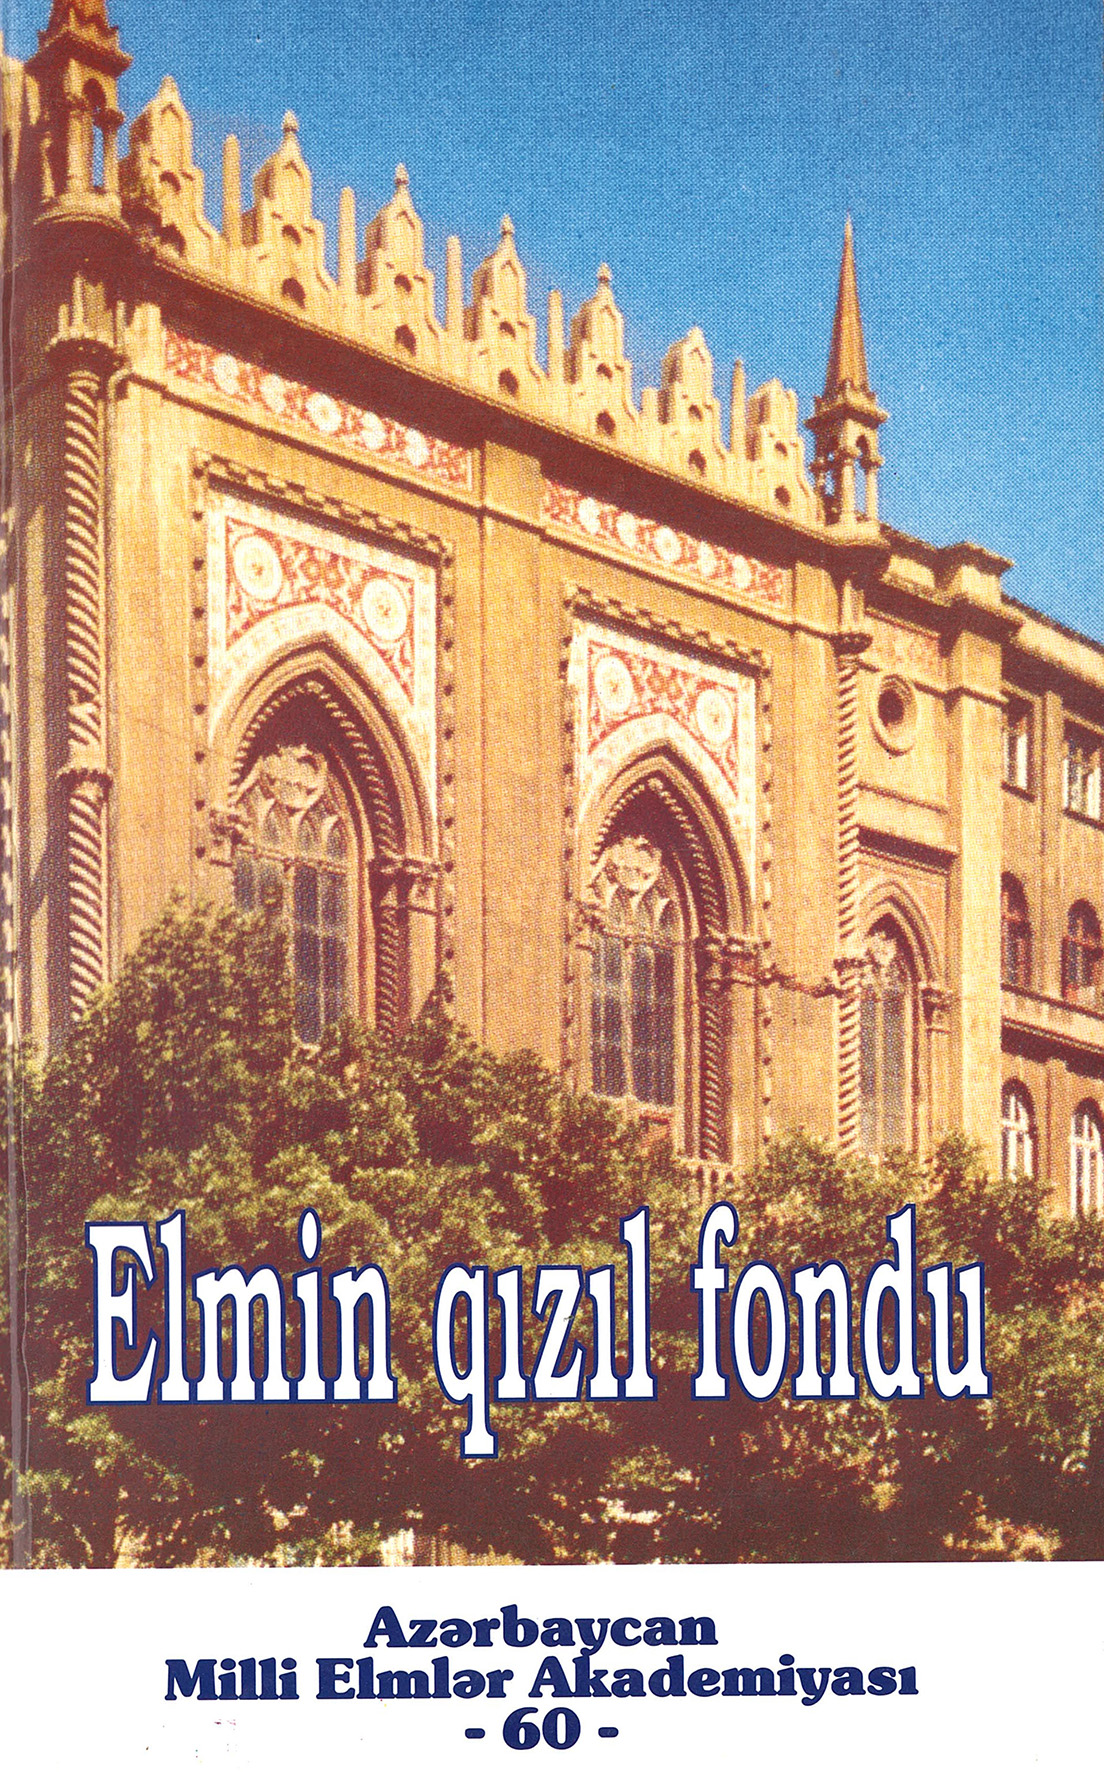  Elmin qızıl fondu - 60